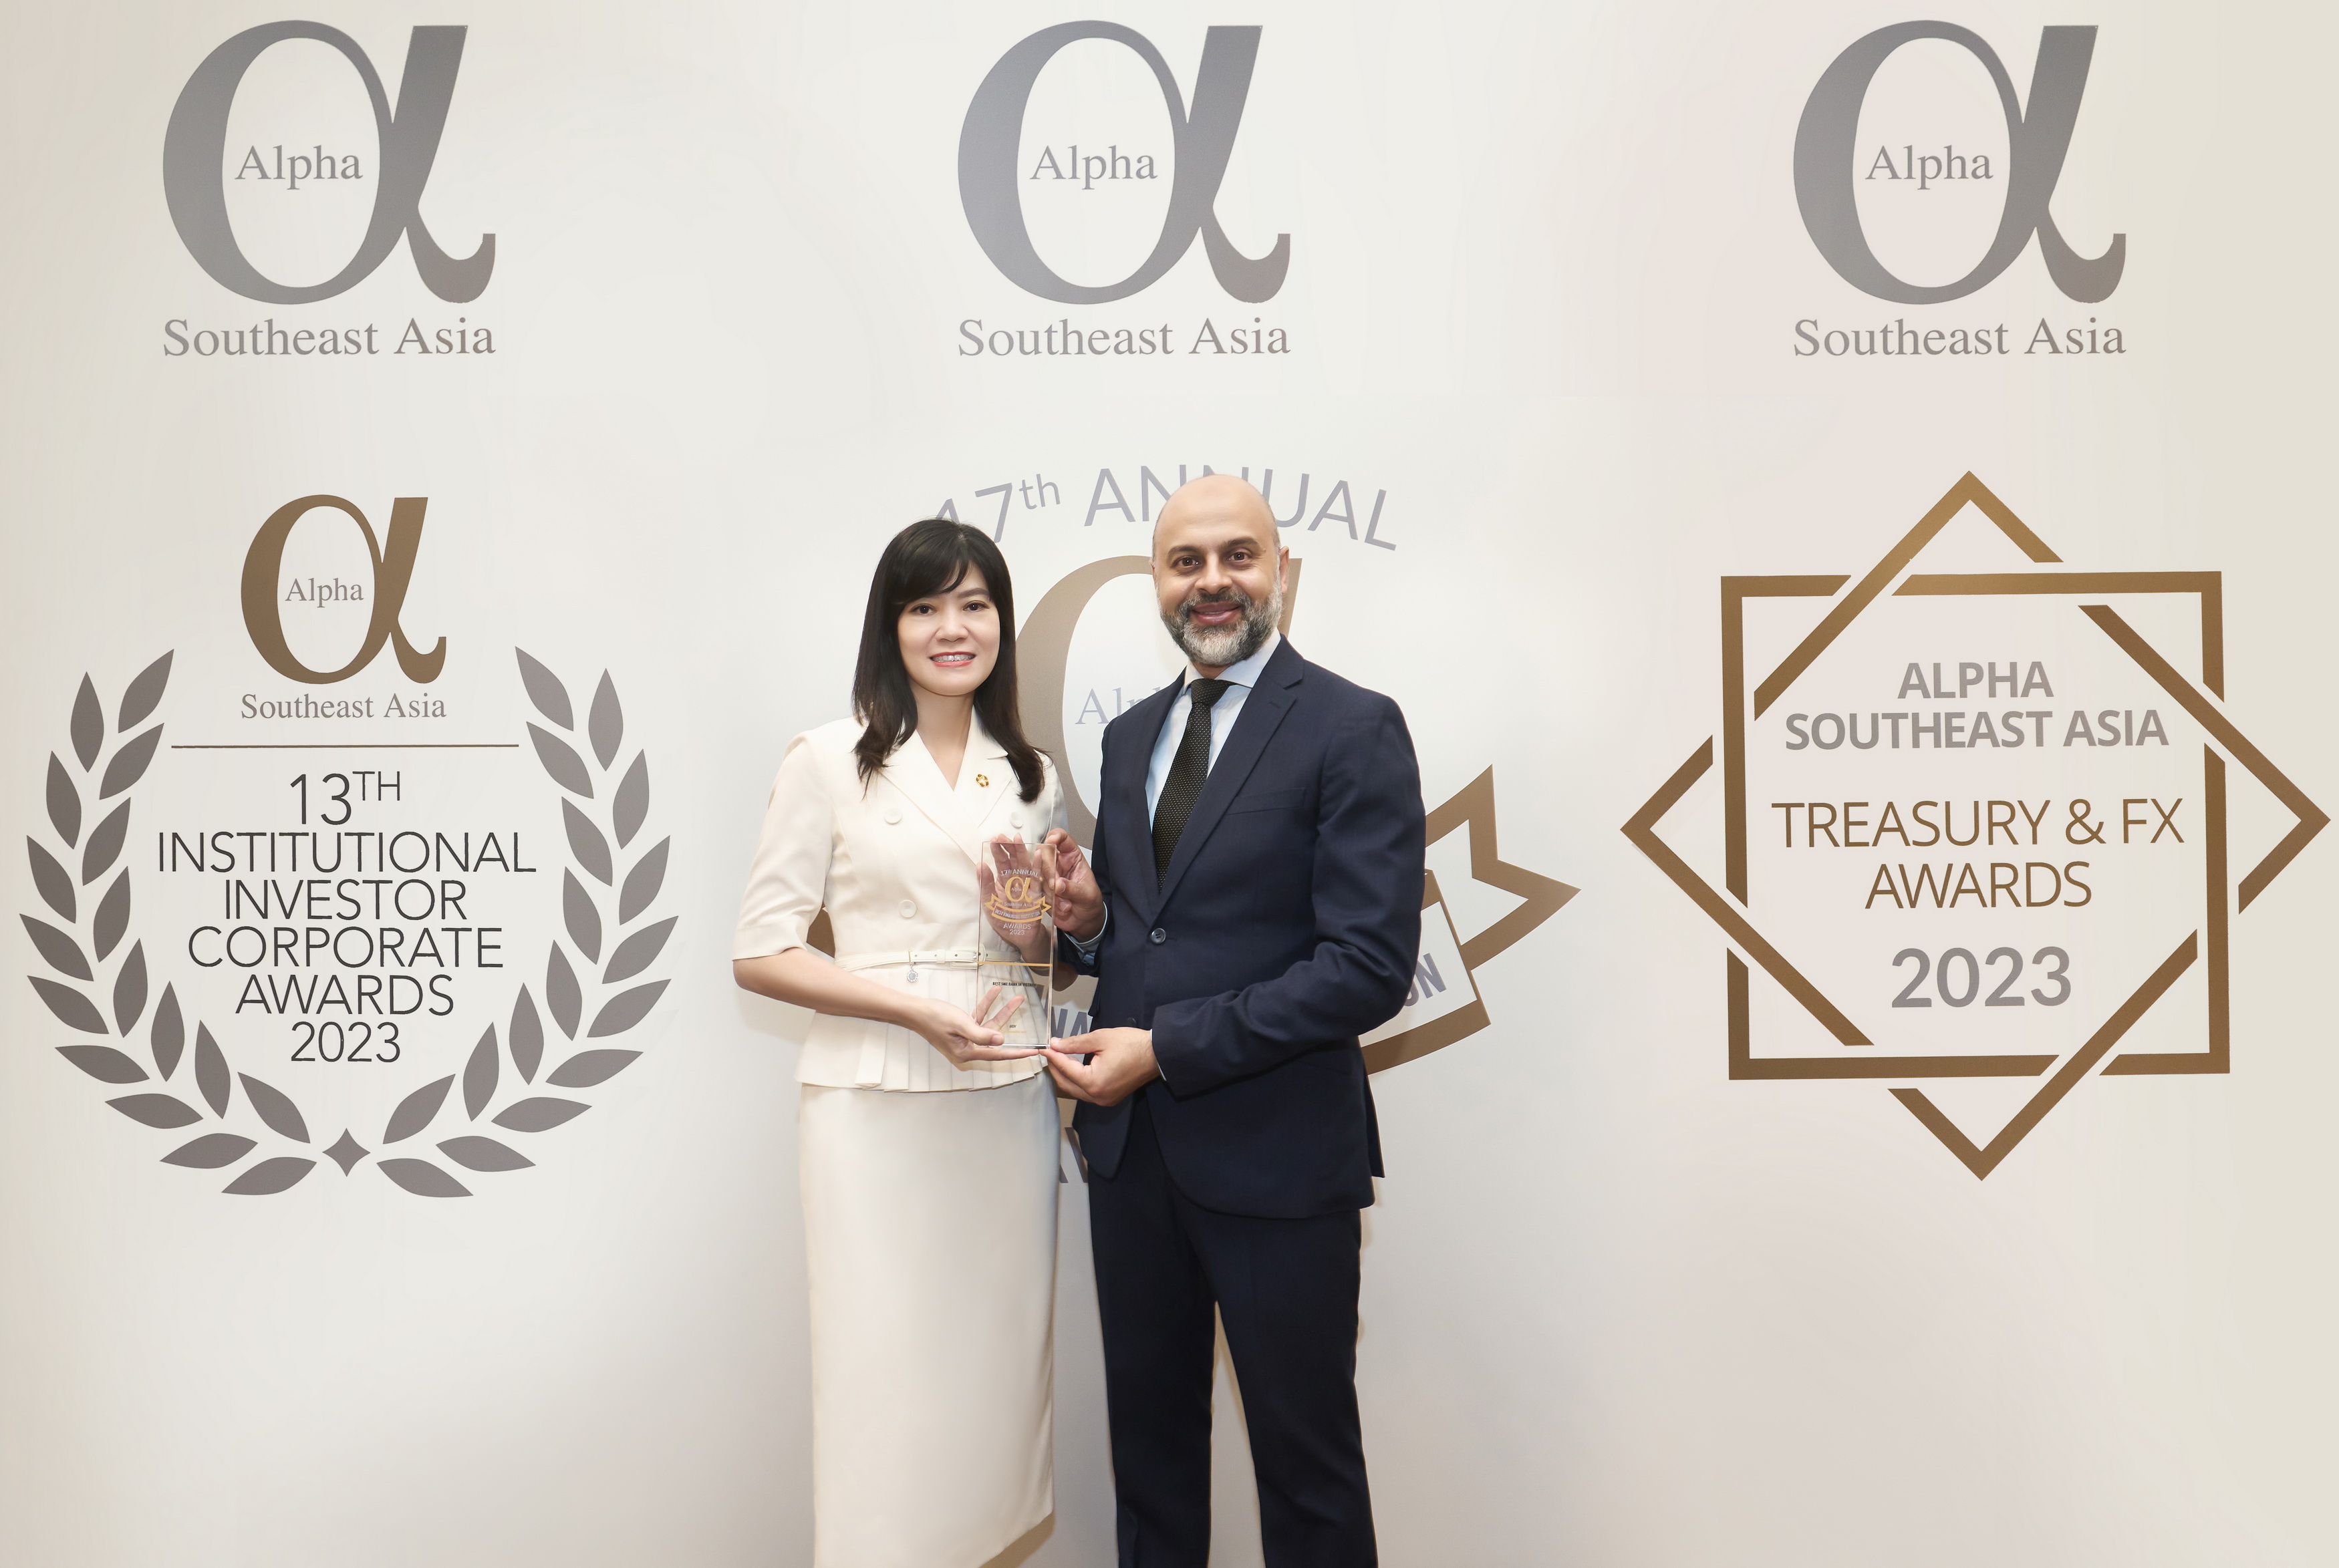 Đại diện BIDV nhận giải thưởng “Ngân hàng SME tốt nhất Việt Nam” lần thứ 6 liên tiếp.